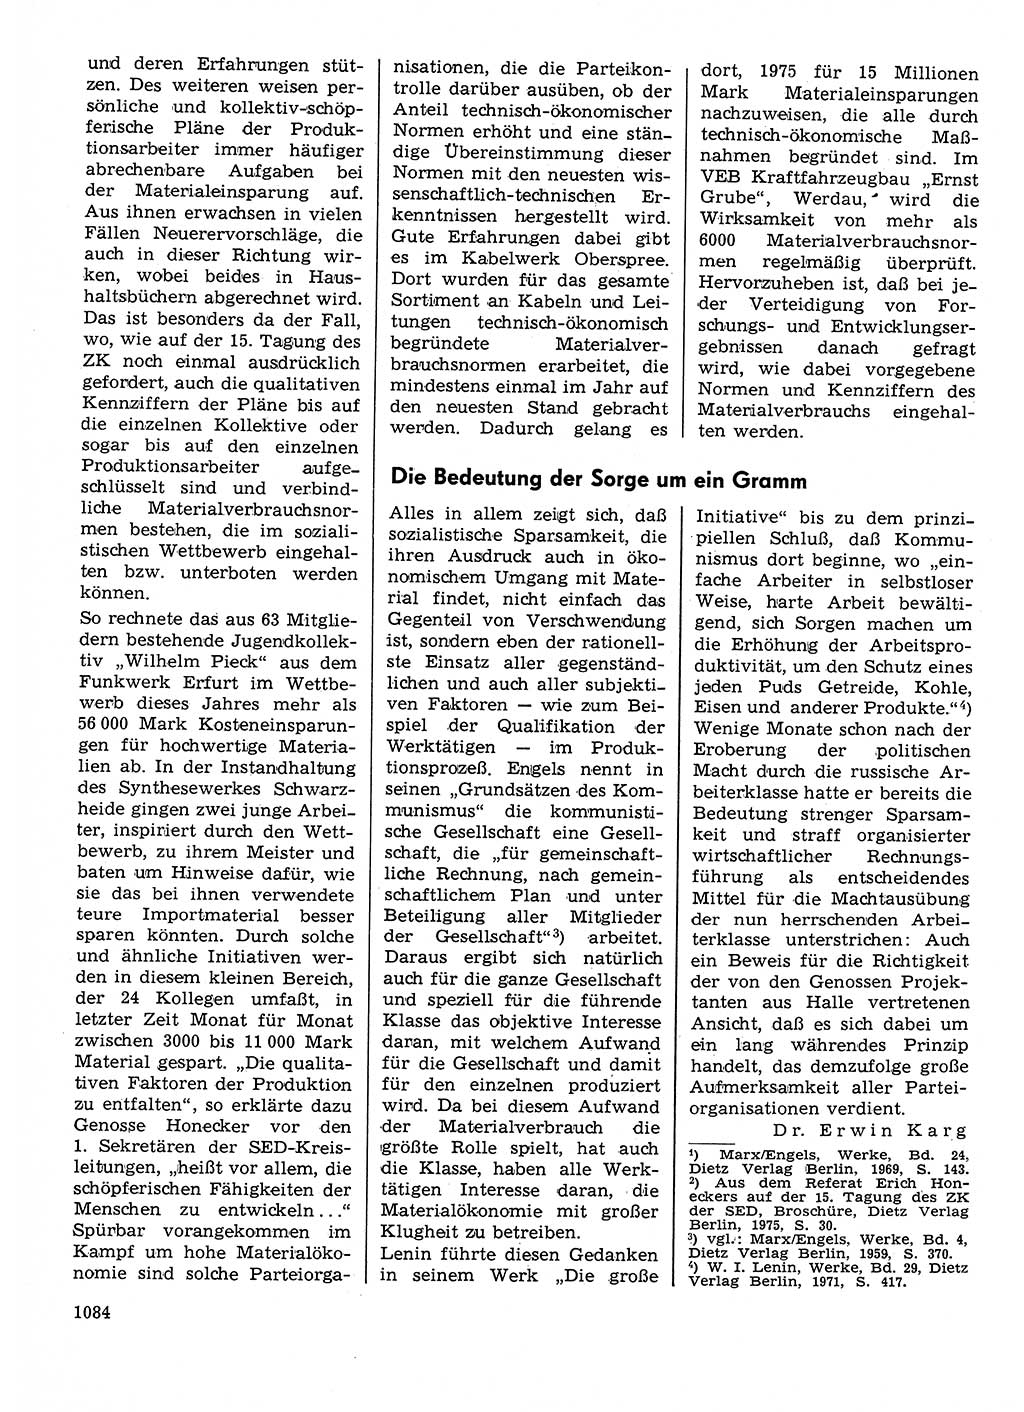 Neuer Weg (NW), Organ des Zentralkomitees (ZK) der SED (Sozialistische Einheitspartei Deutschlands) für Fragen des Parteilebens, 30. Jahrgang [Deutsche Demokratische Republik (DDR)] 1975, Seite 1084 (NW ZK SED DDR 1975, S. 1084)